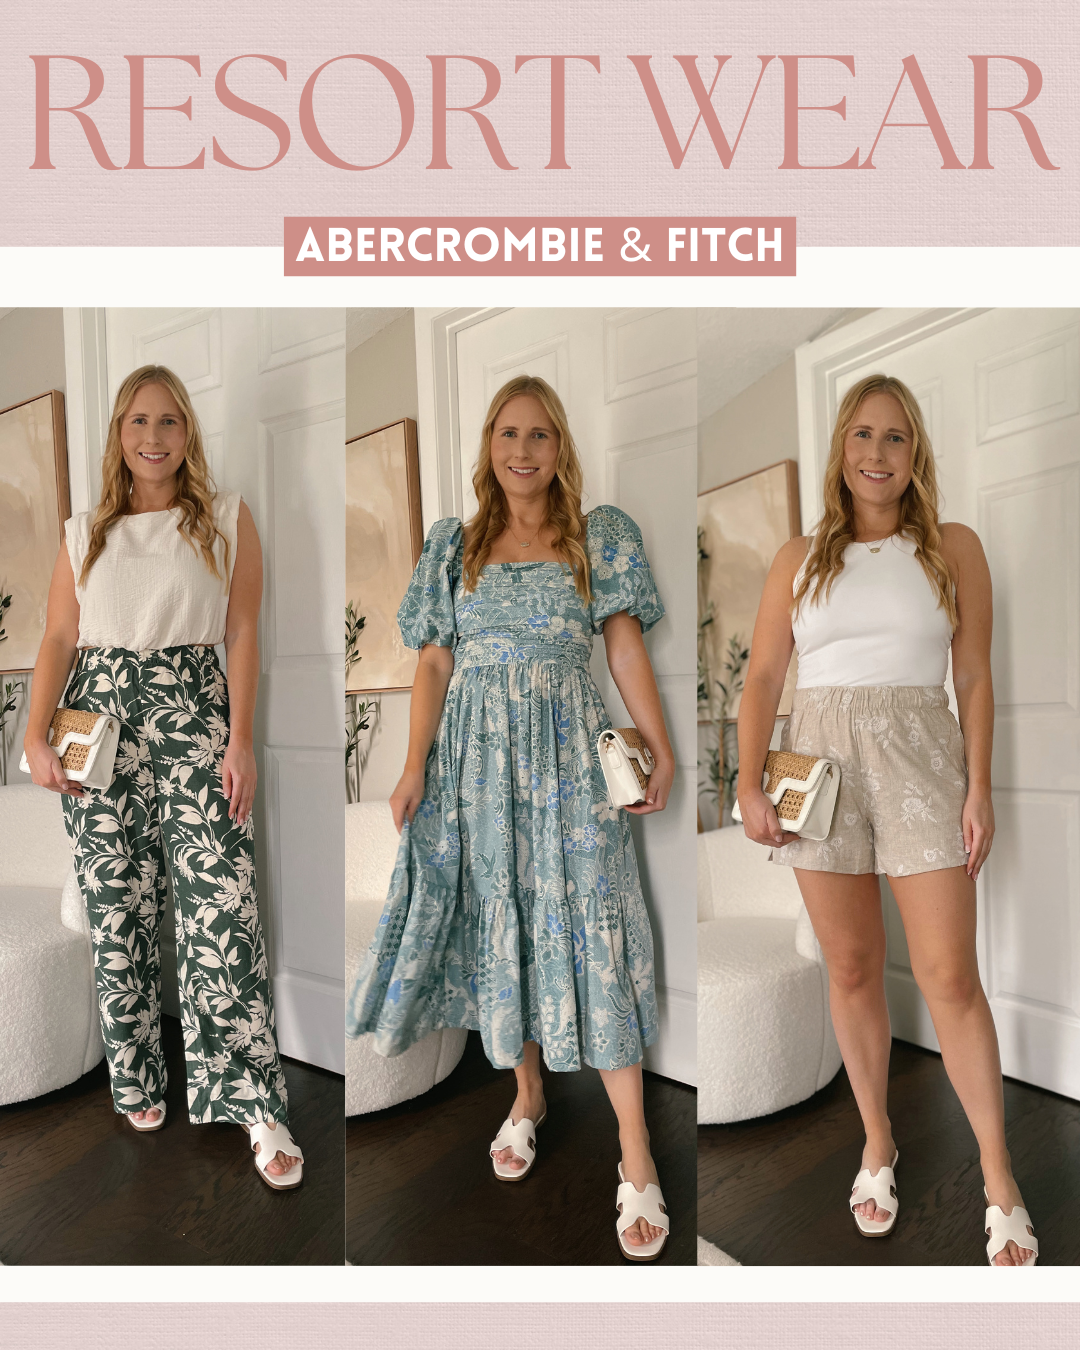 Abercrombie & Fitch Resort Wear